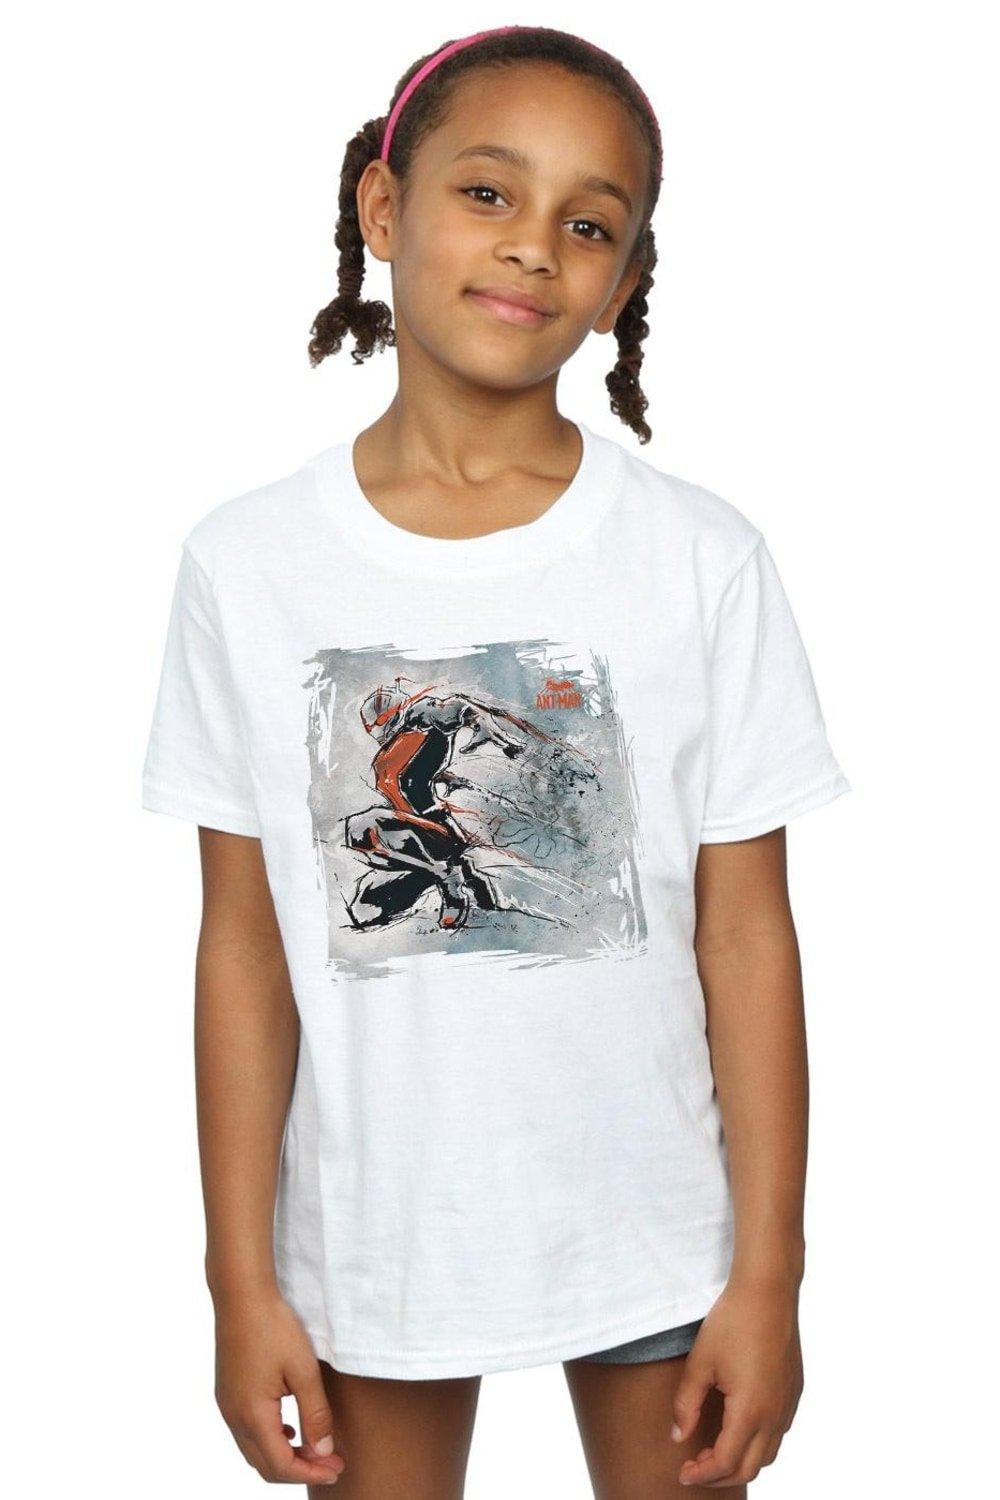 Хлопковая футболка «Человек-муравей» с художественным эскизом Marvel, белый